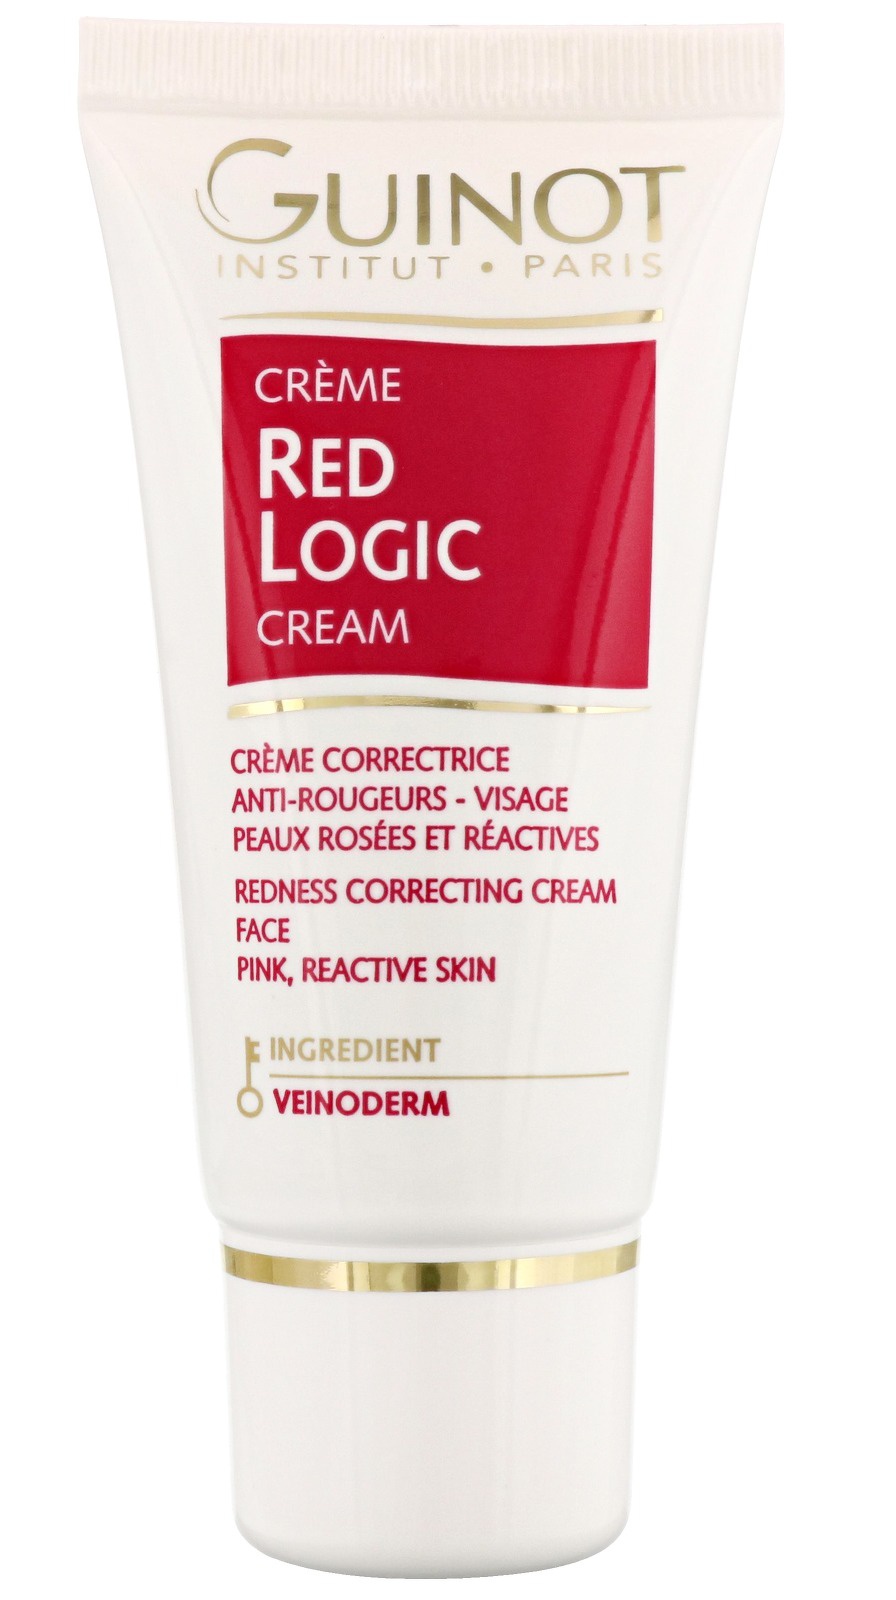 Guinot Red Logic Cream